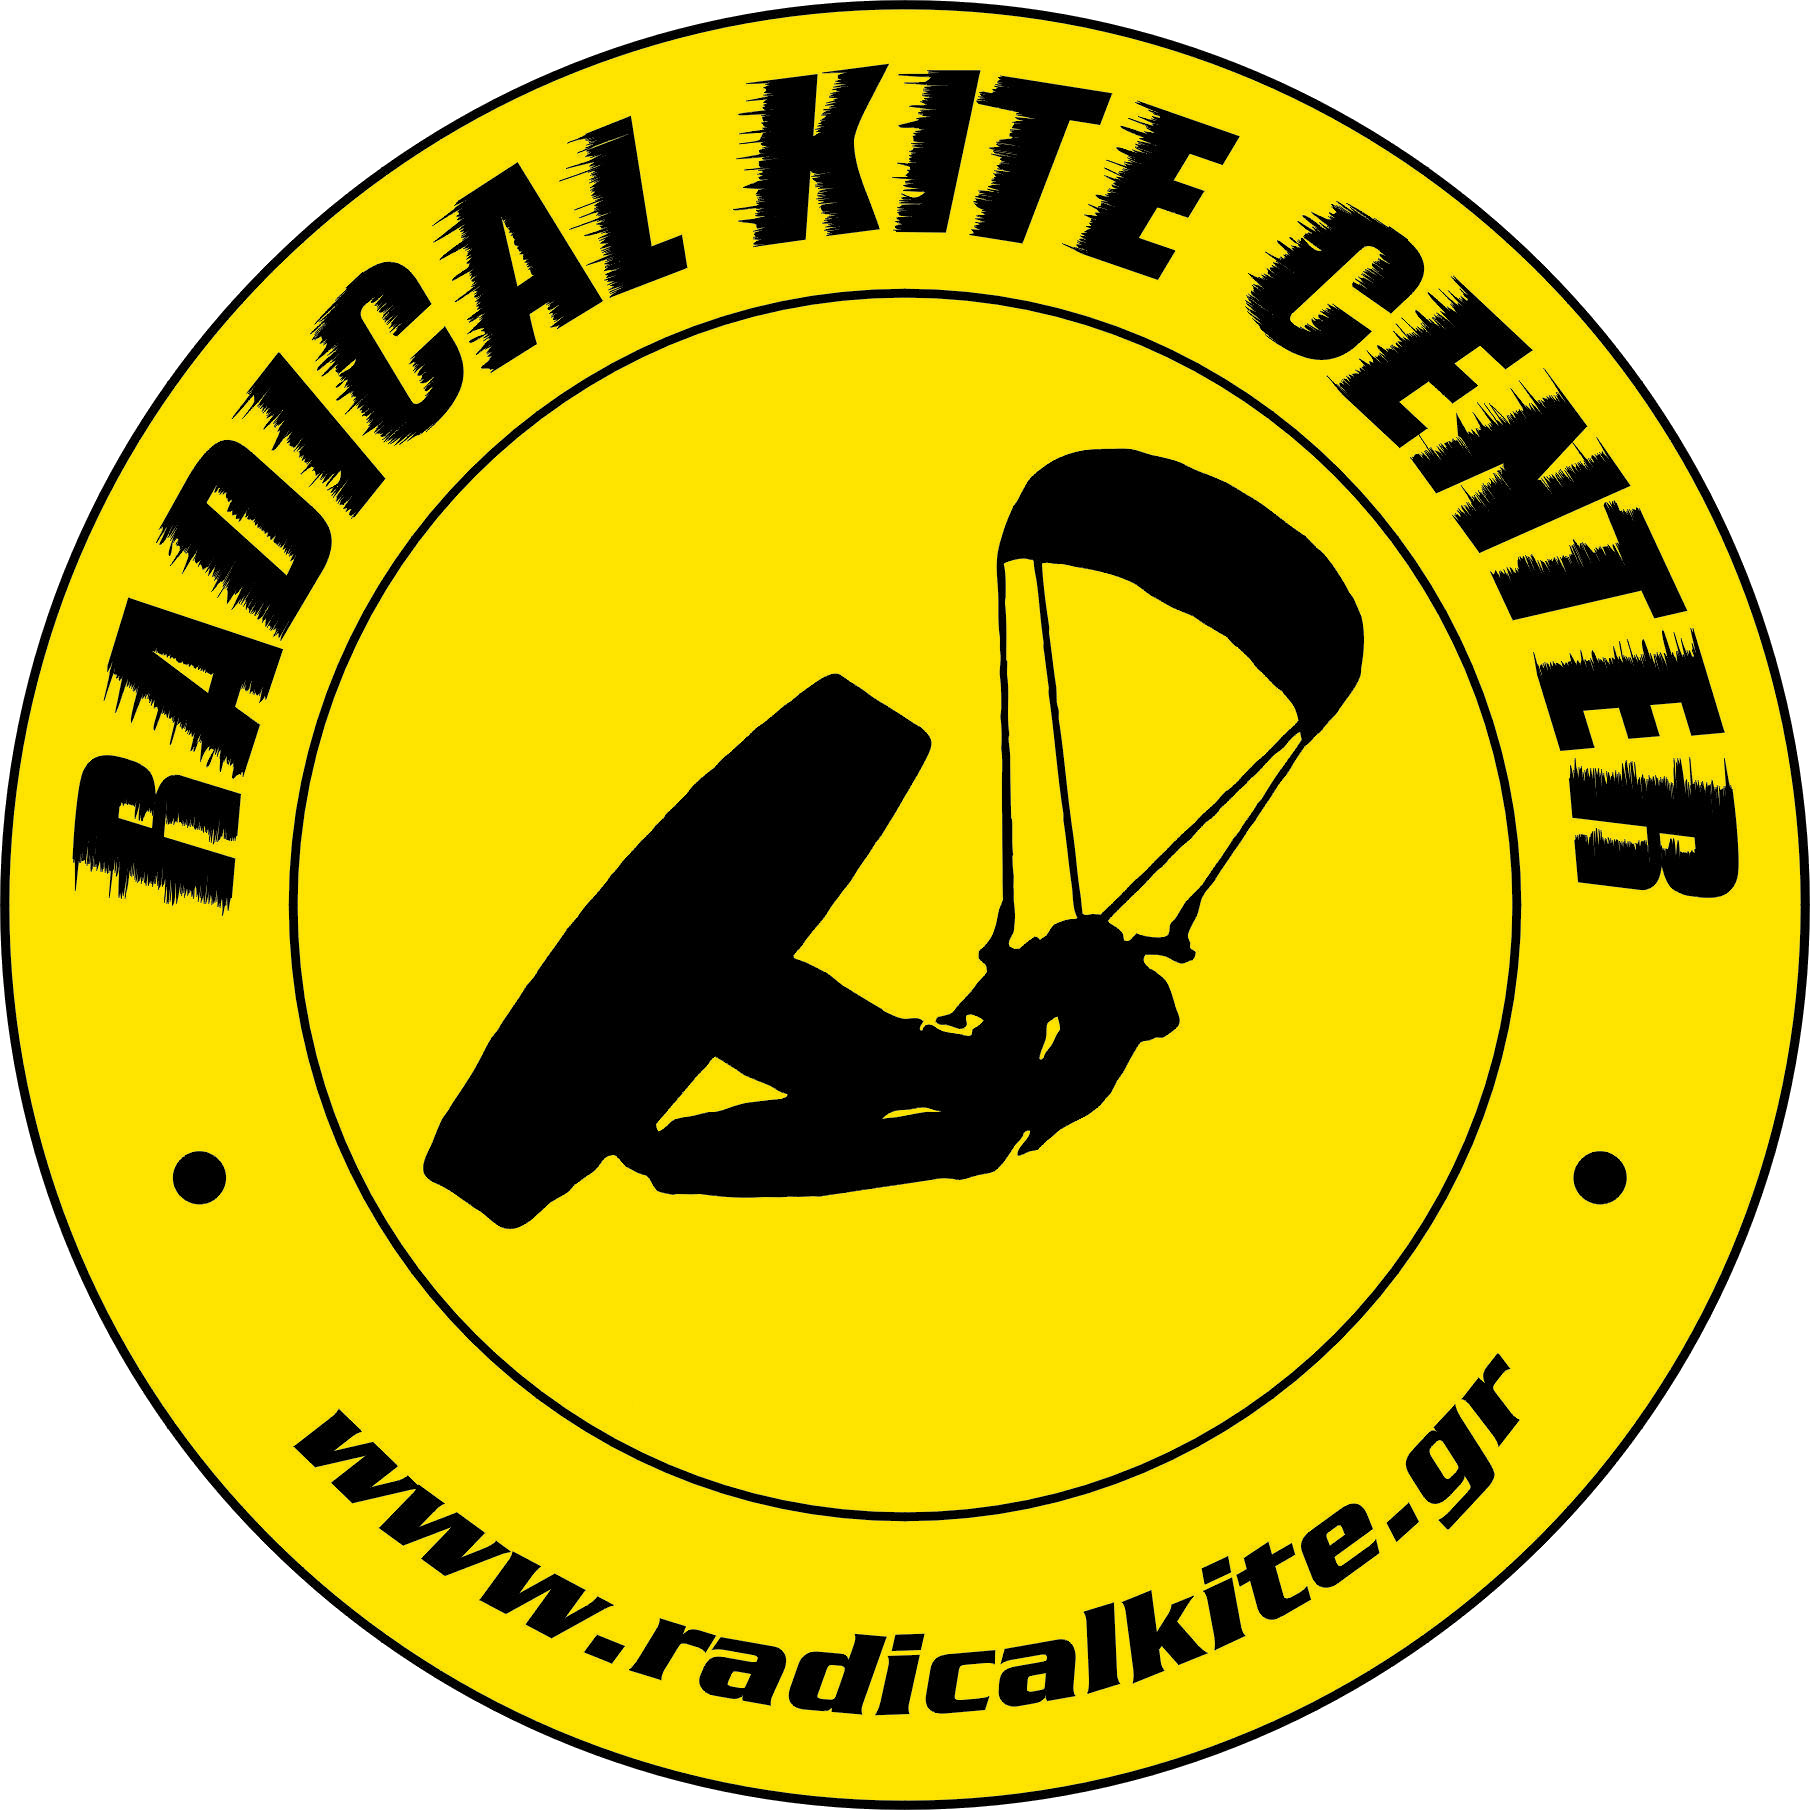 Radical Kite Center